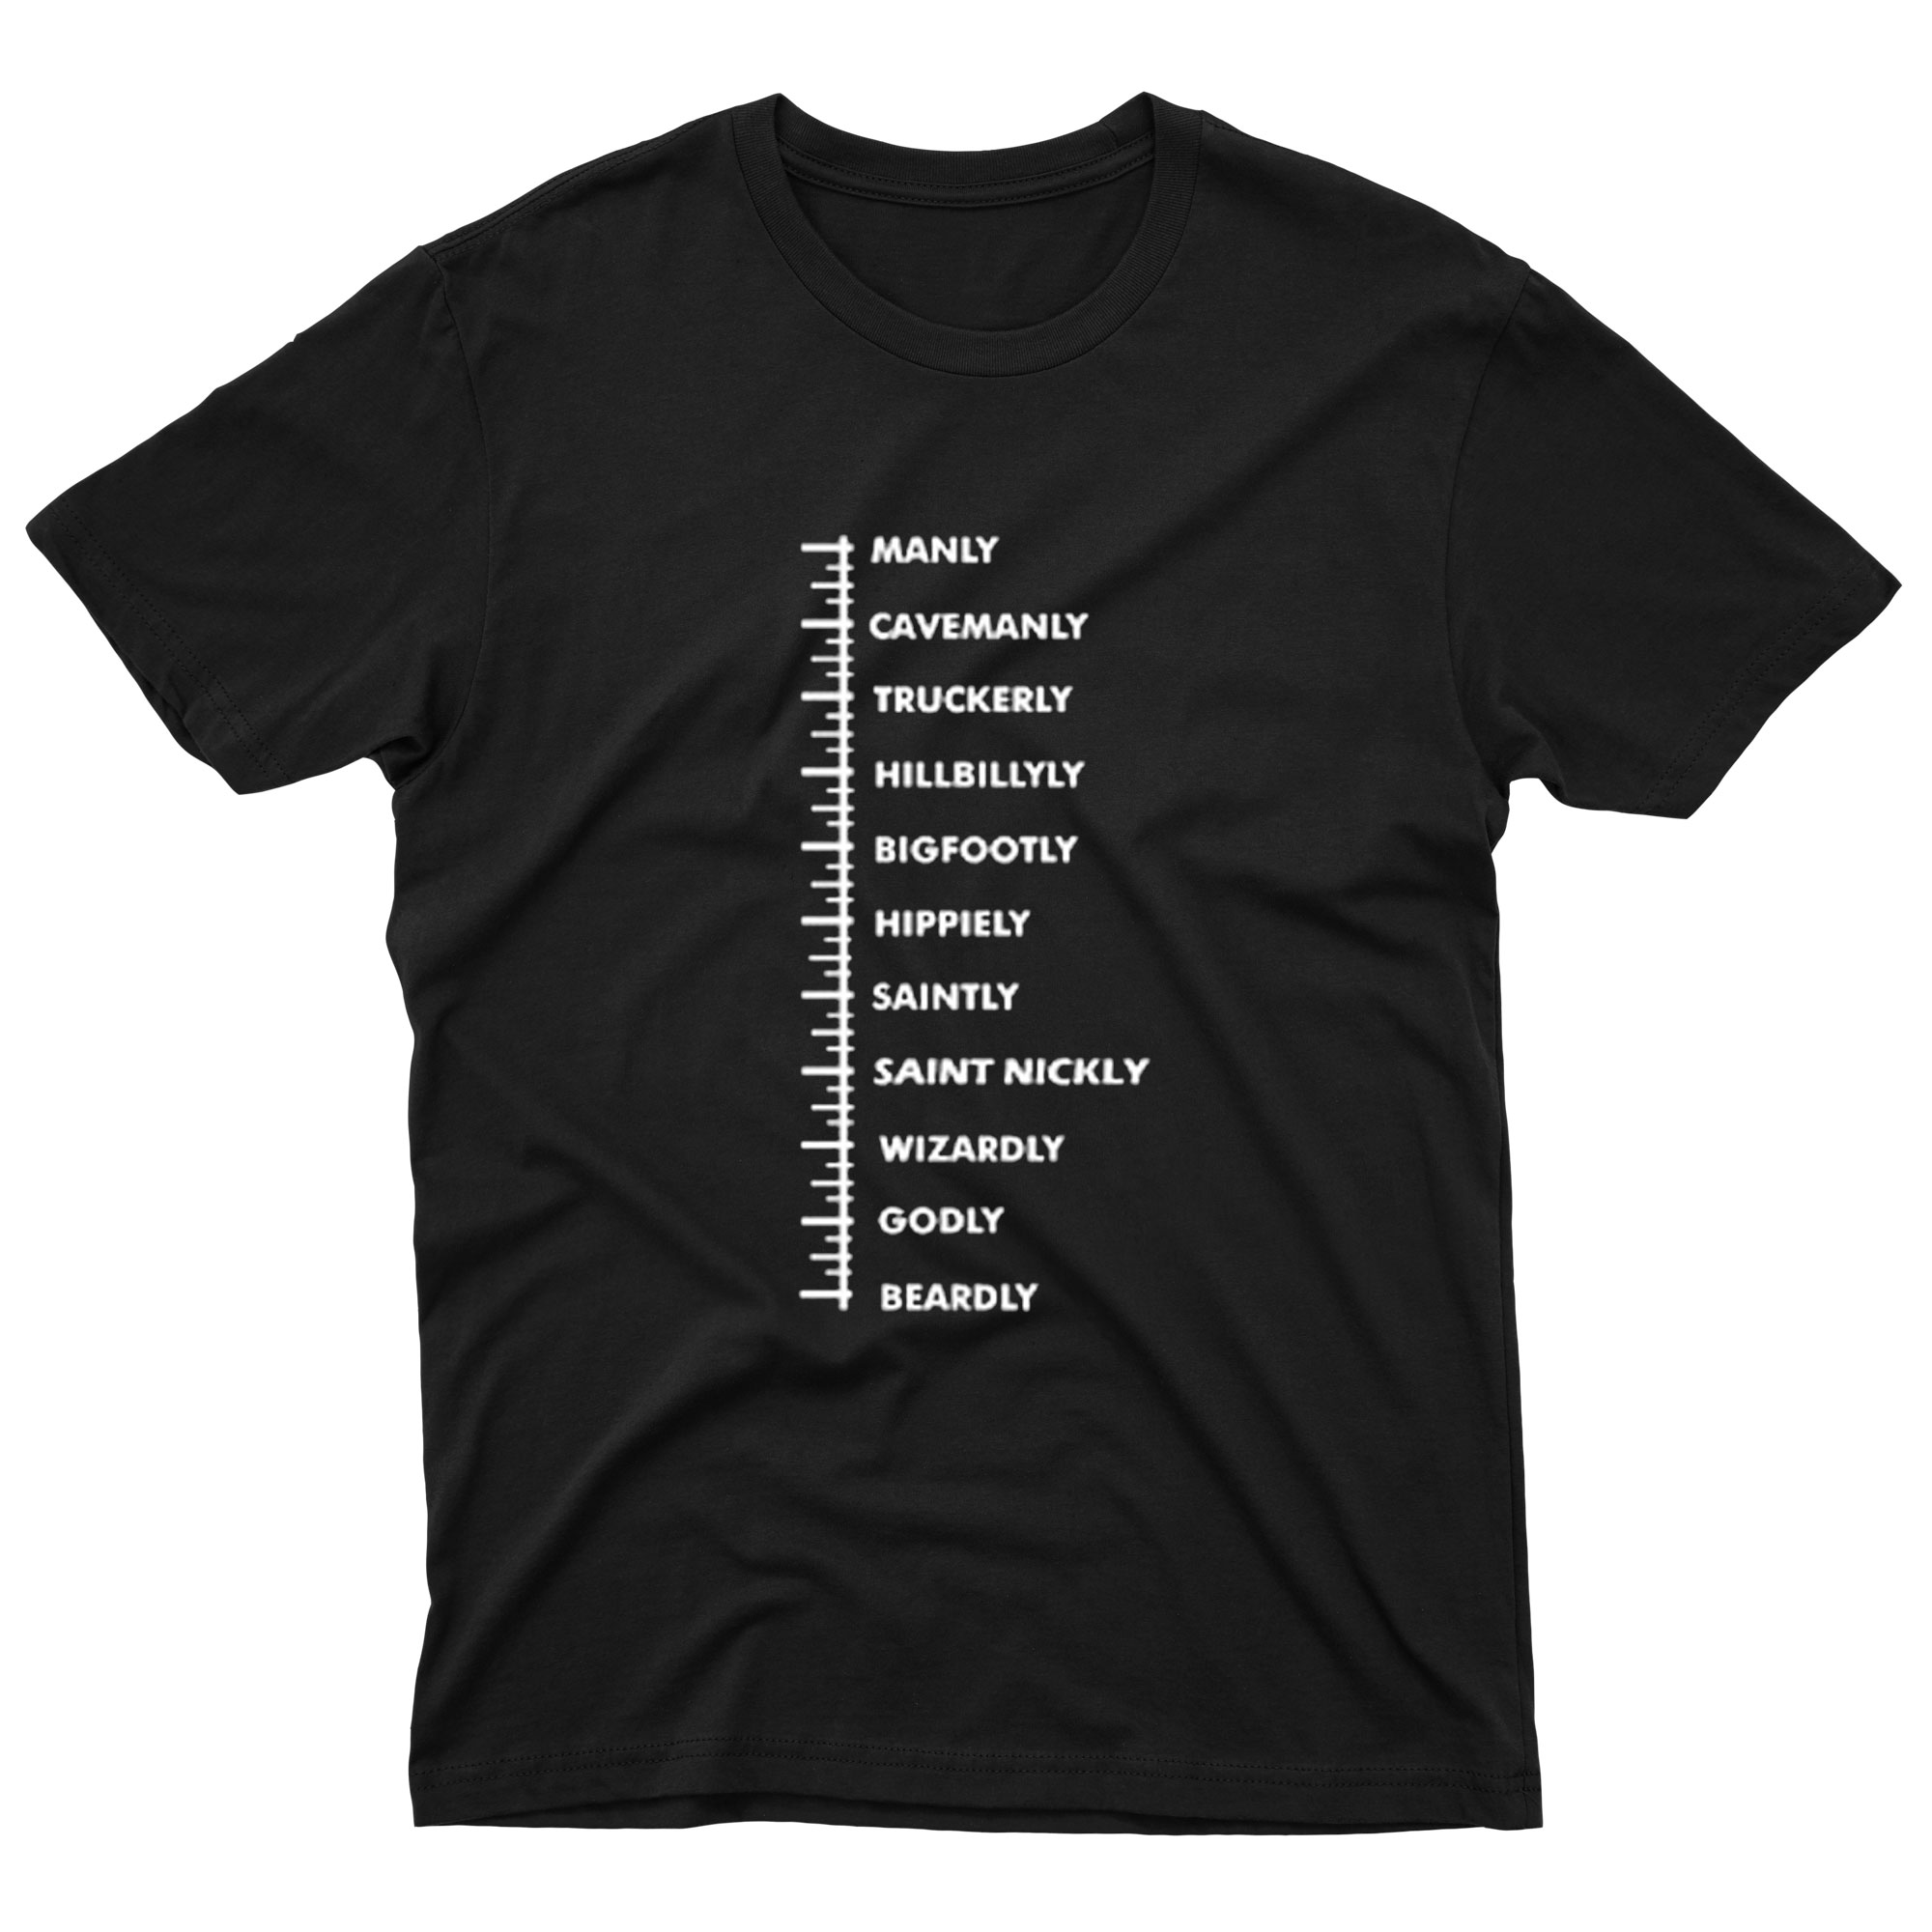 Ruler T-shirt